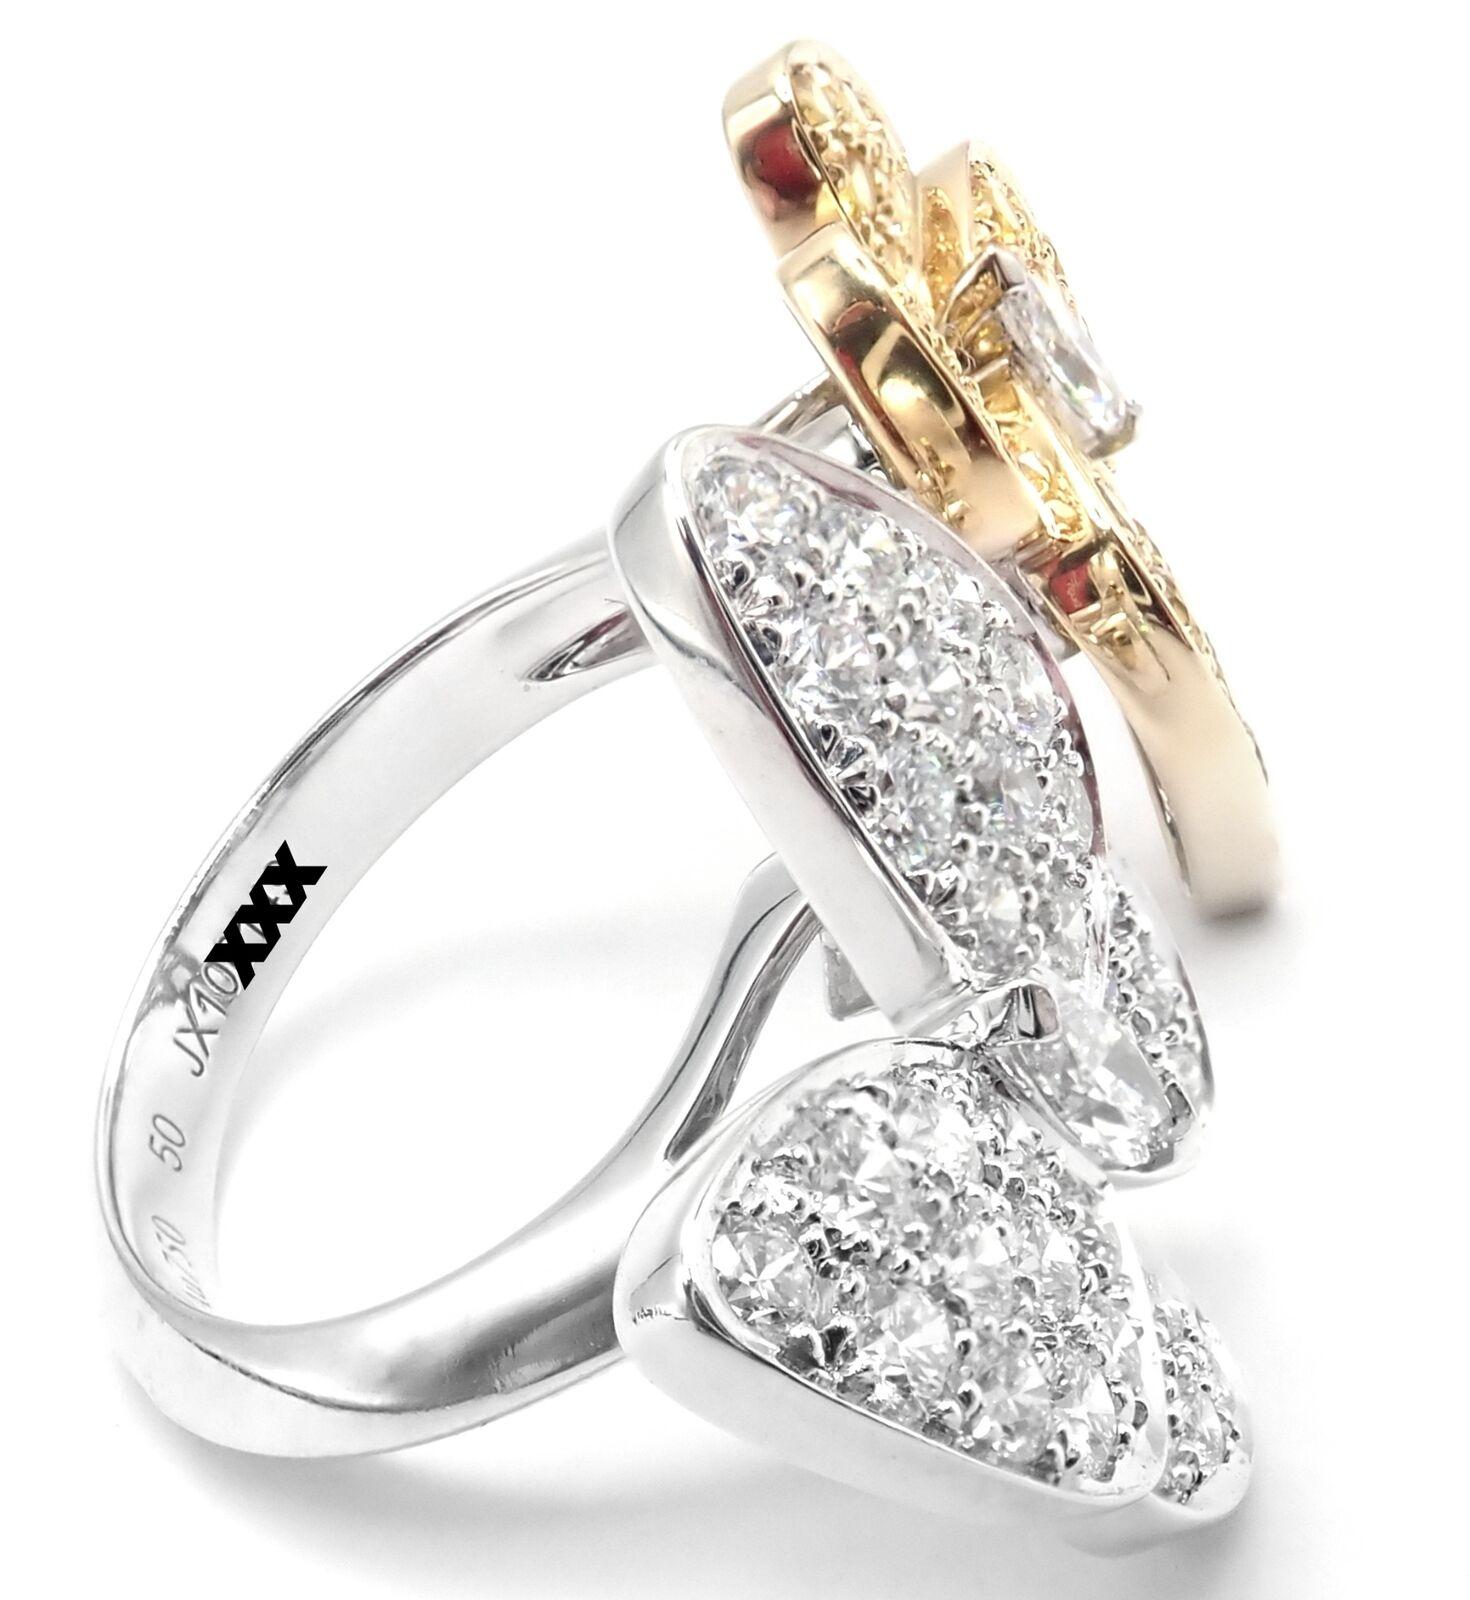 18k Weißgold Diamant und gelber Saphir zwei Schmetterling zwischen den Fingern Ring von Van Cleef & Arpels.
Mit 36 runden Diamanten im Brillantschliff VVS1 Klarheit, E Farbe Gesamtgewicht .99ct
34 runde gelbe Saphire Gesamtgewicht .88ct
Dieser Ring